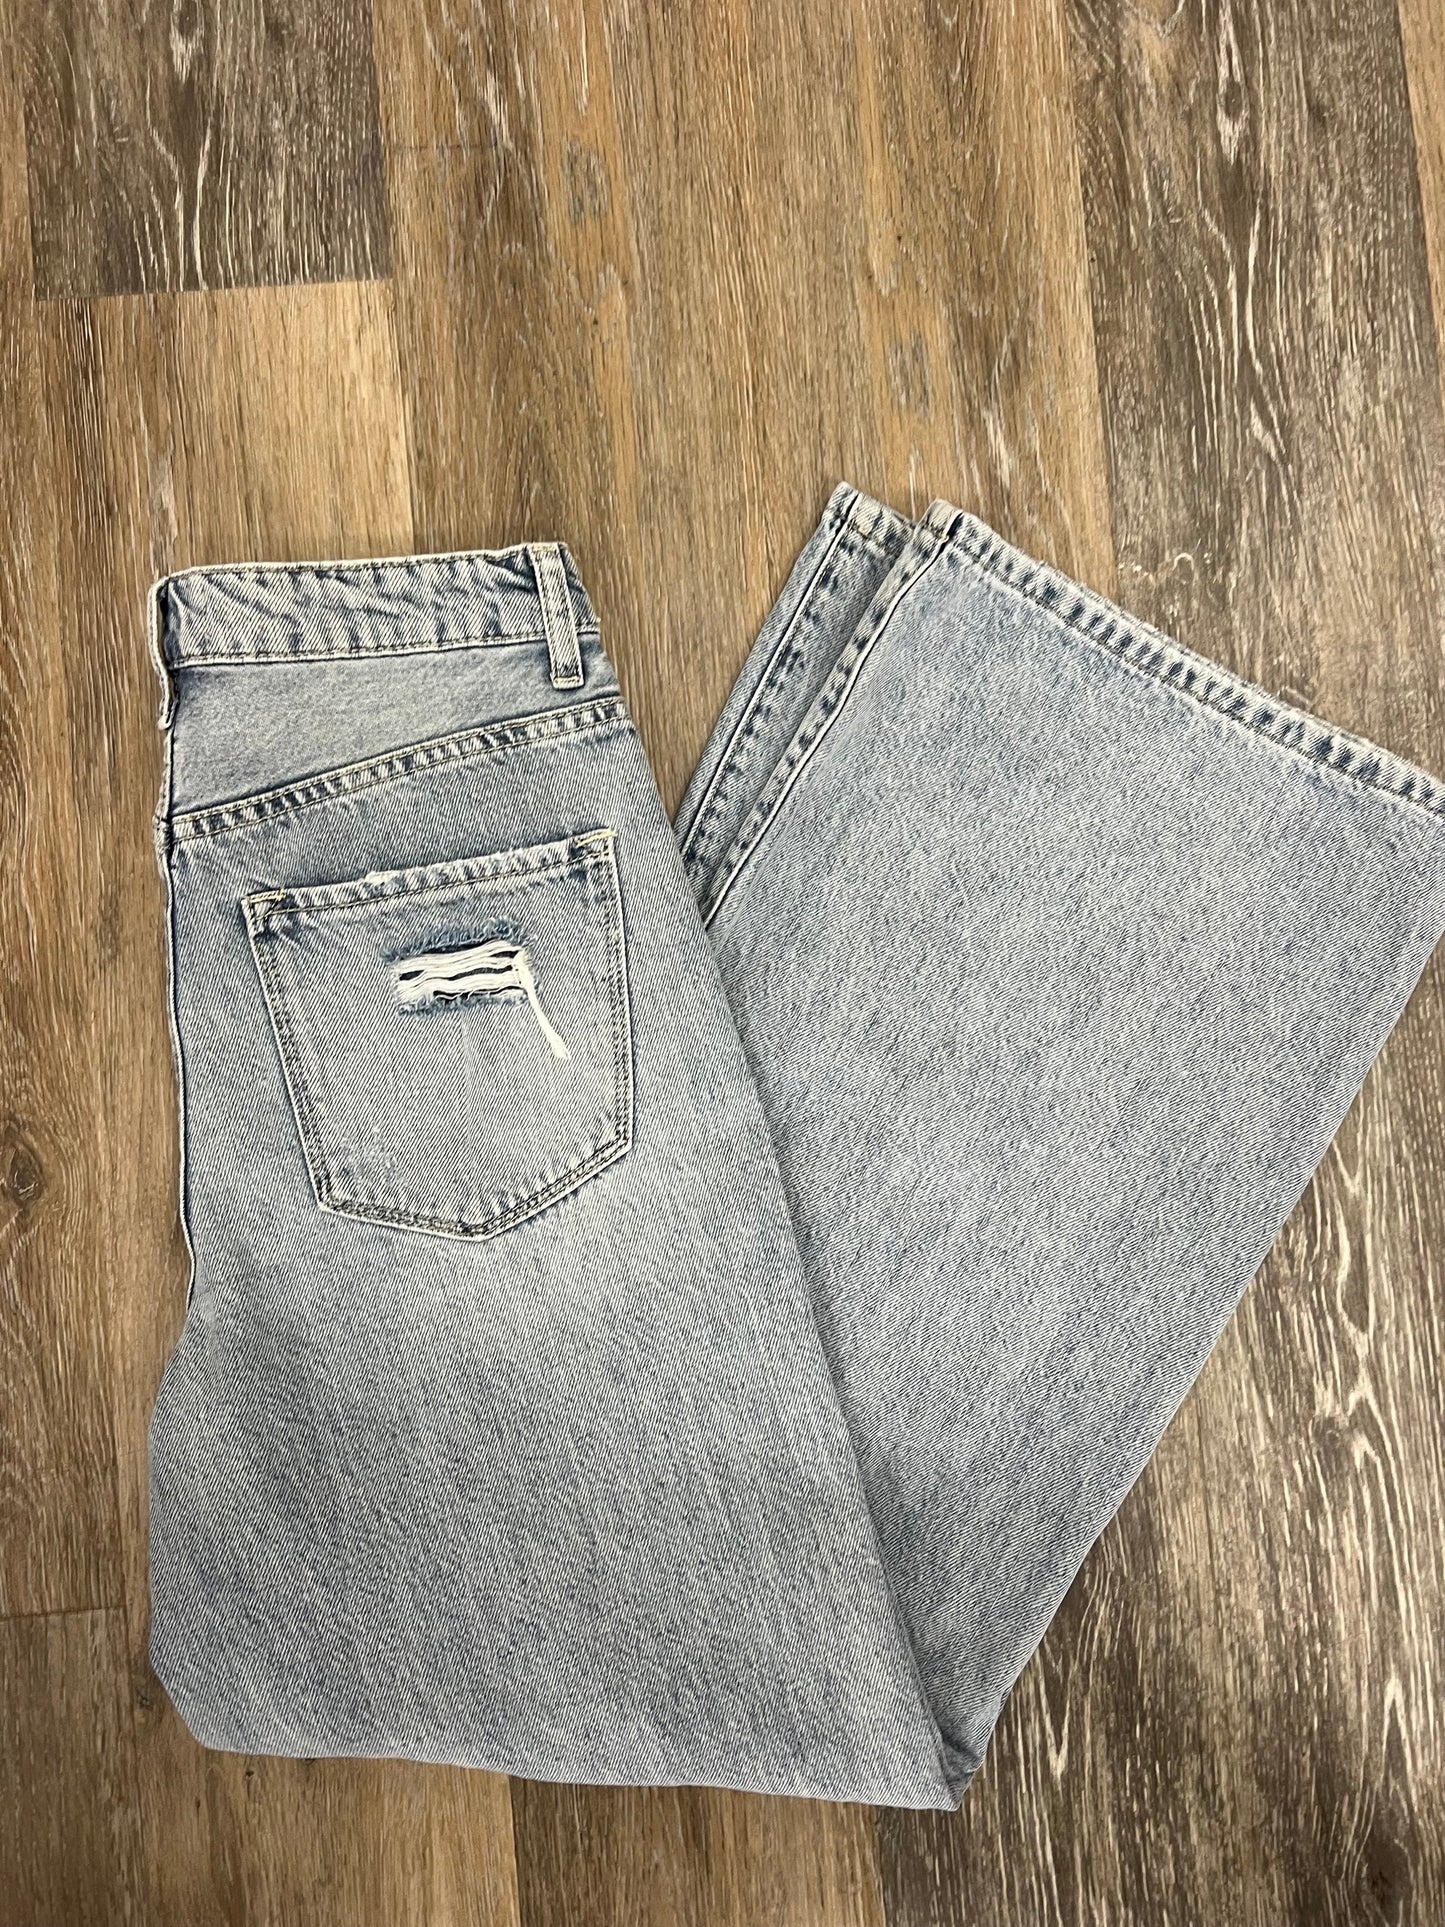 Jeans Wide Leg By Vervet  Size: 2/26